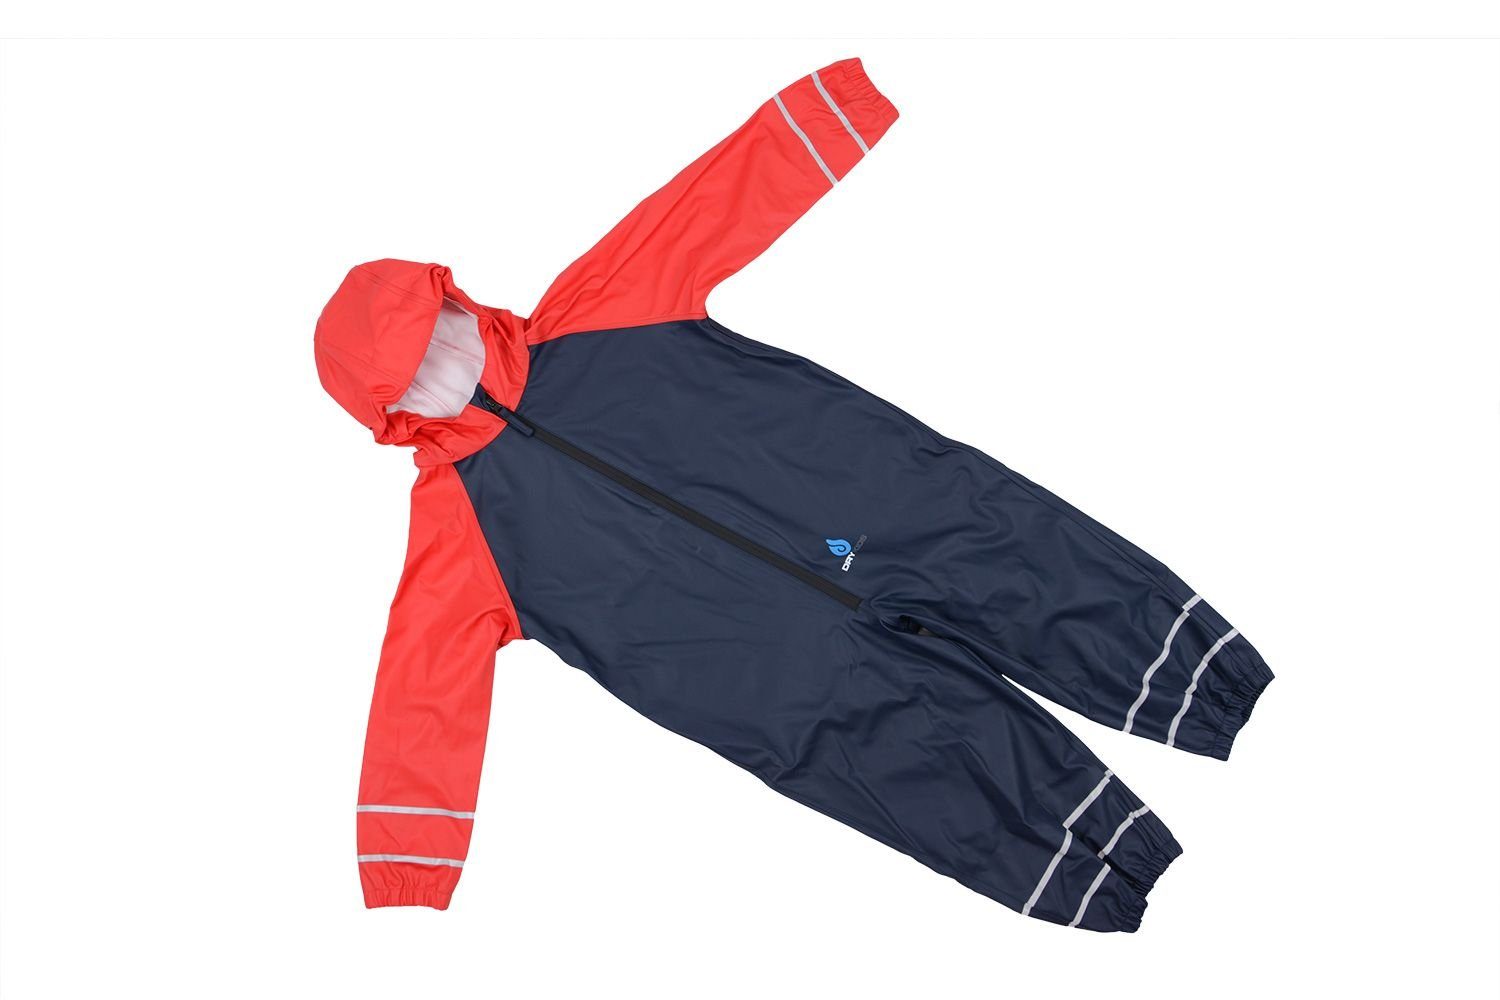 DRY KIDS Regenanzug (1-tlg), Ungefütterter Regenanzug für Kinder  verschweißte Nähte Größe 98 - 104 reflektierende Regenbekleidung Blau, Rot  online kaufen | OTTO